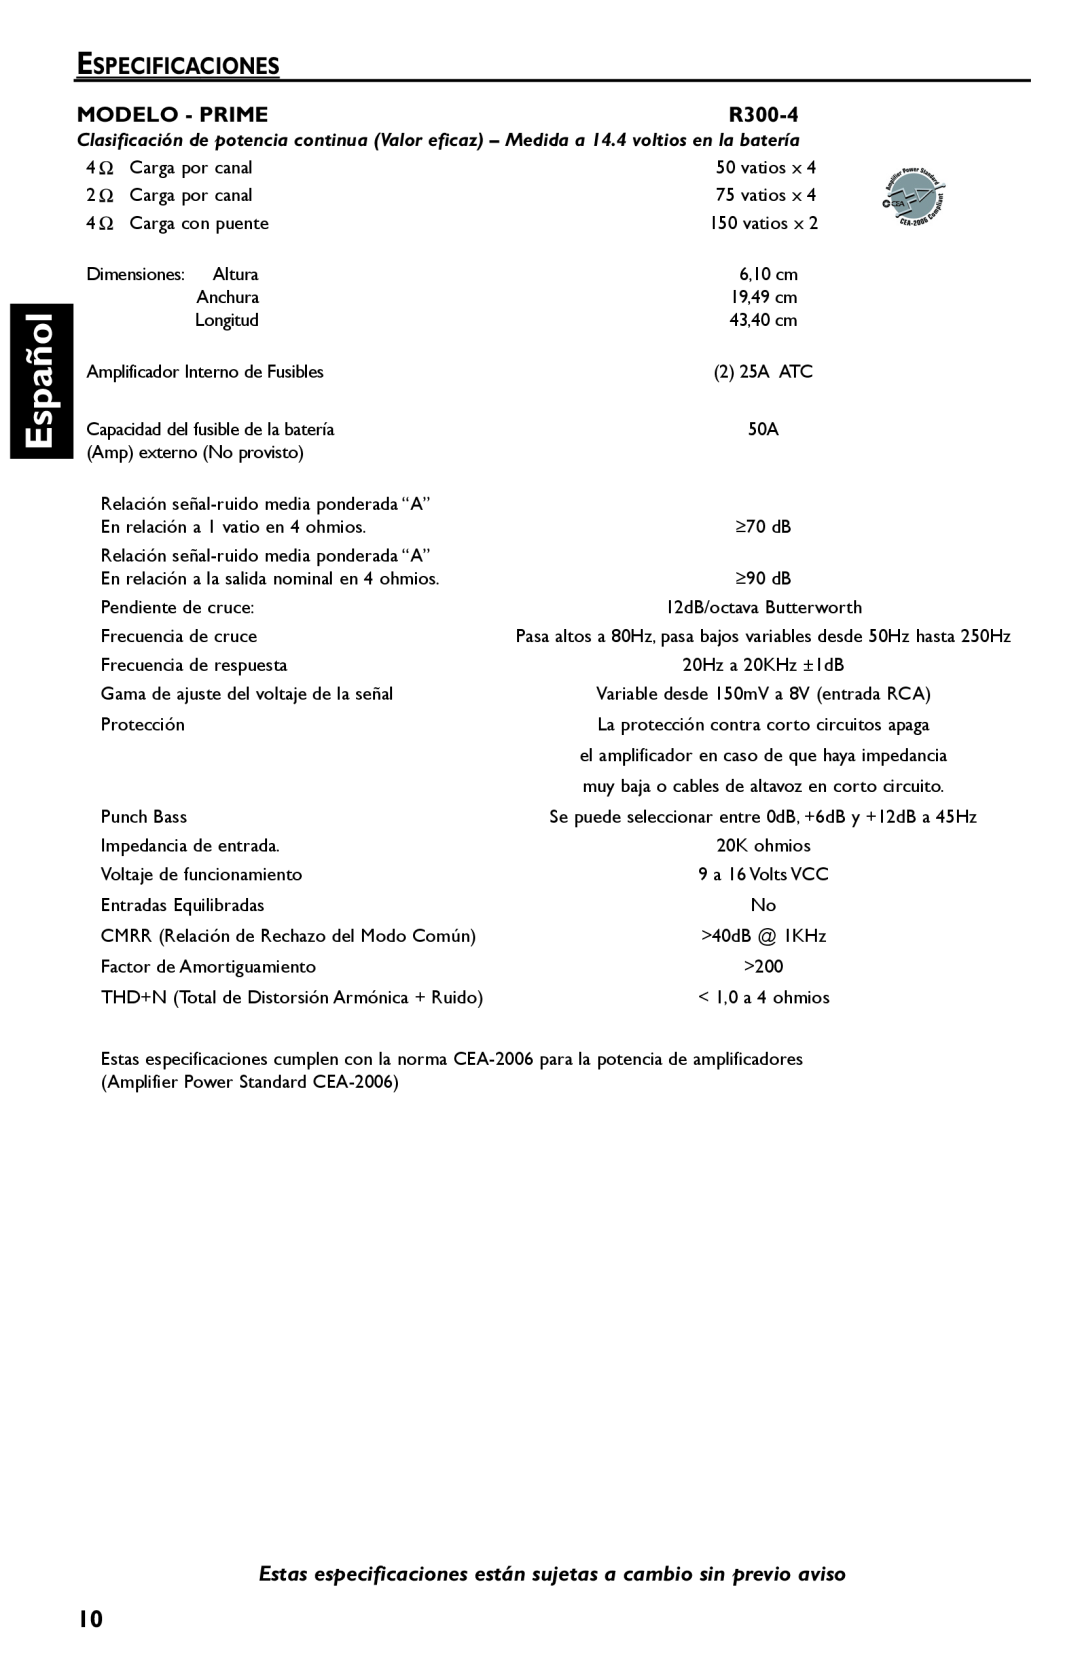 Rockford Fosgate R300-4 manual Español, Especificaciones, Modelo - Prime 